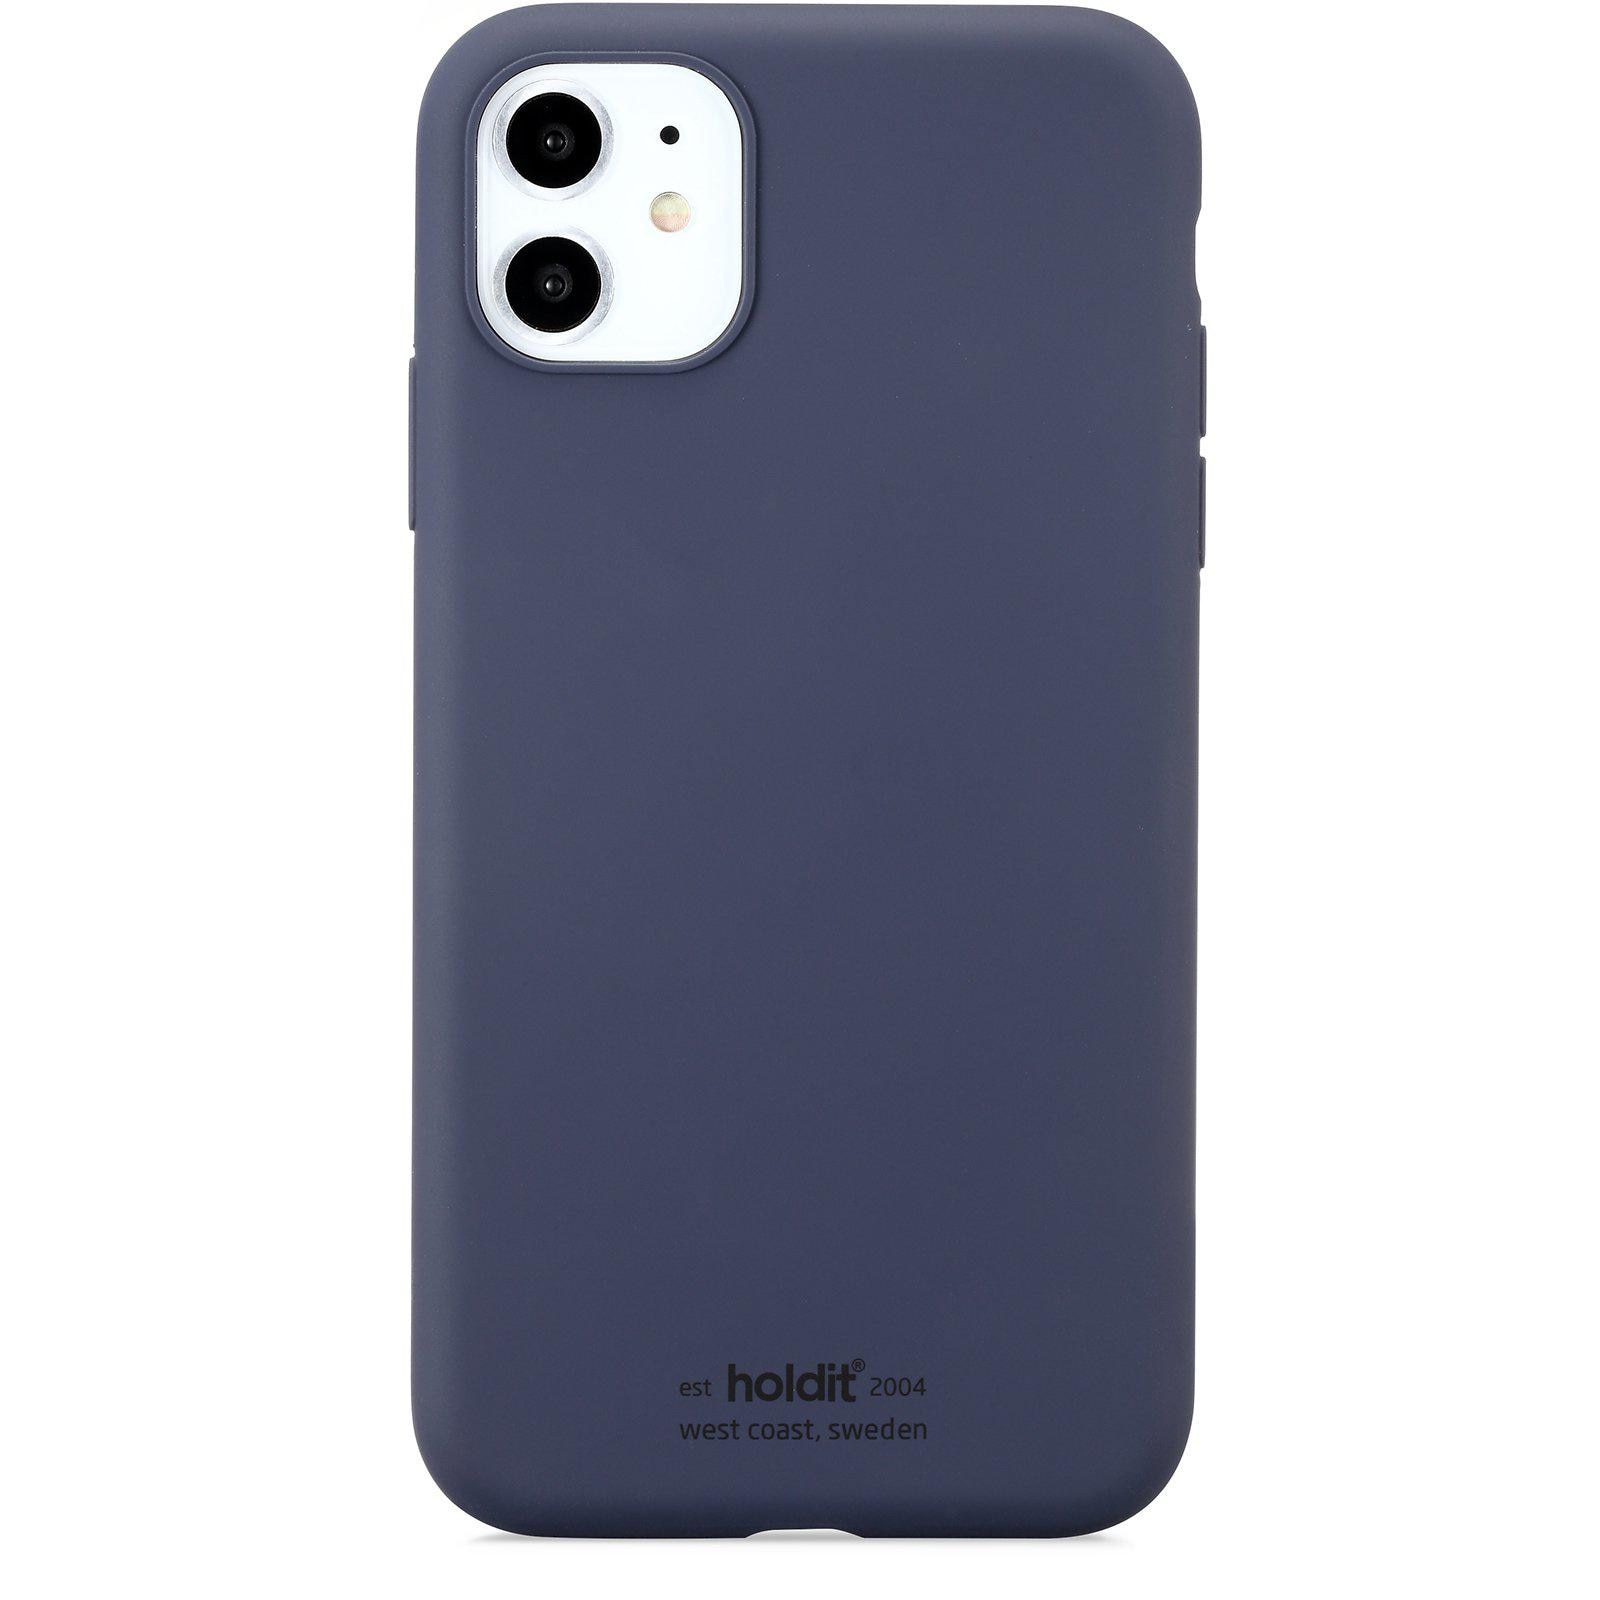 Silikonhülle iPhone 11/XR Navy Blue